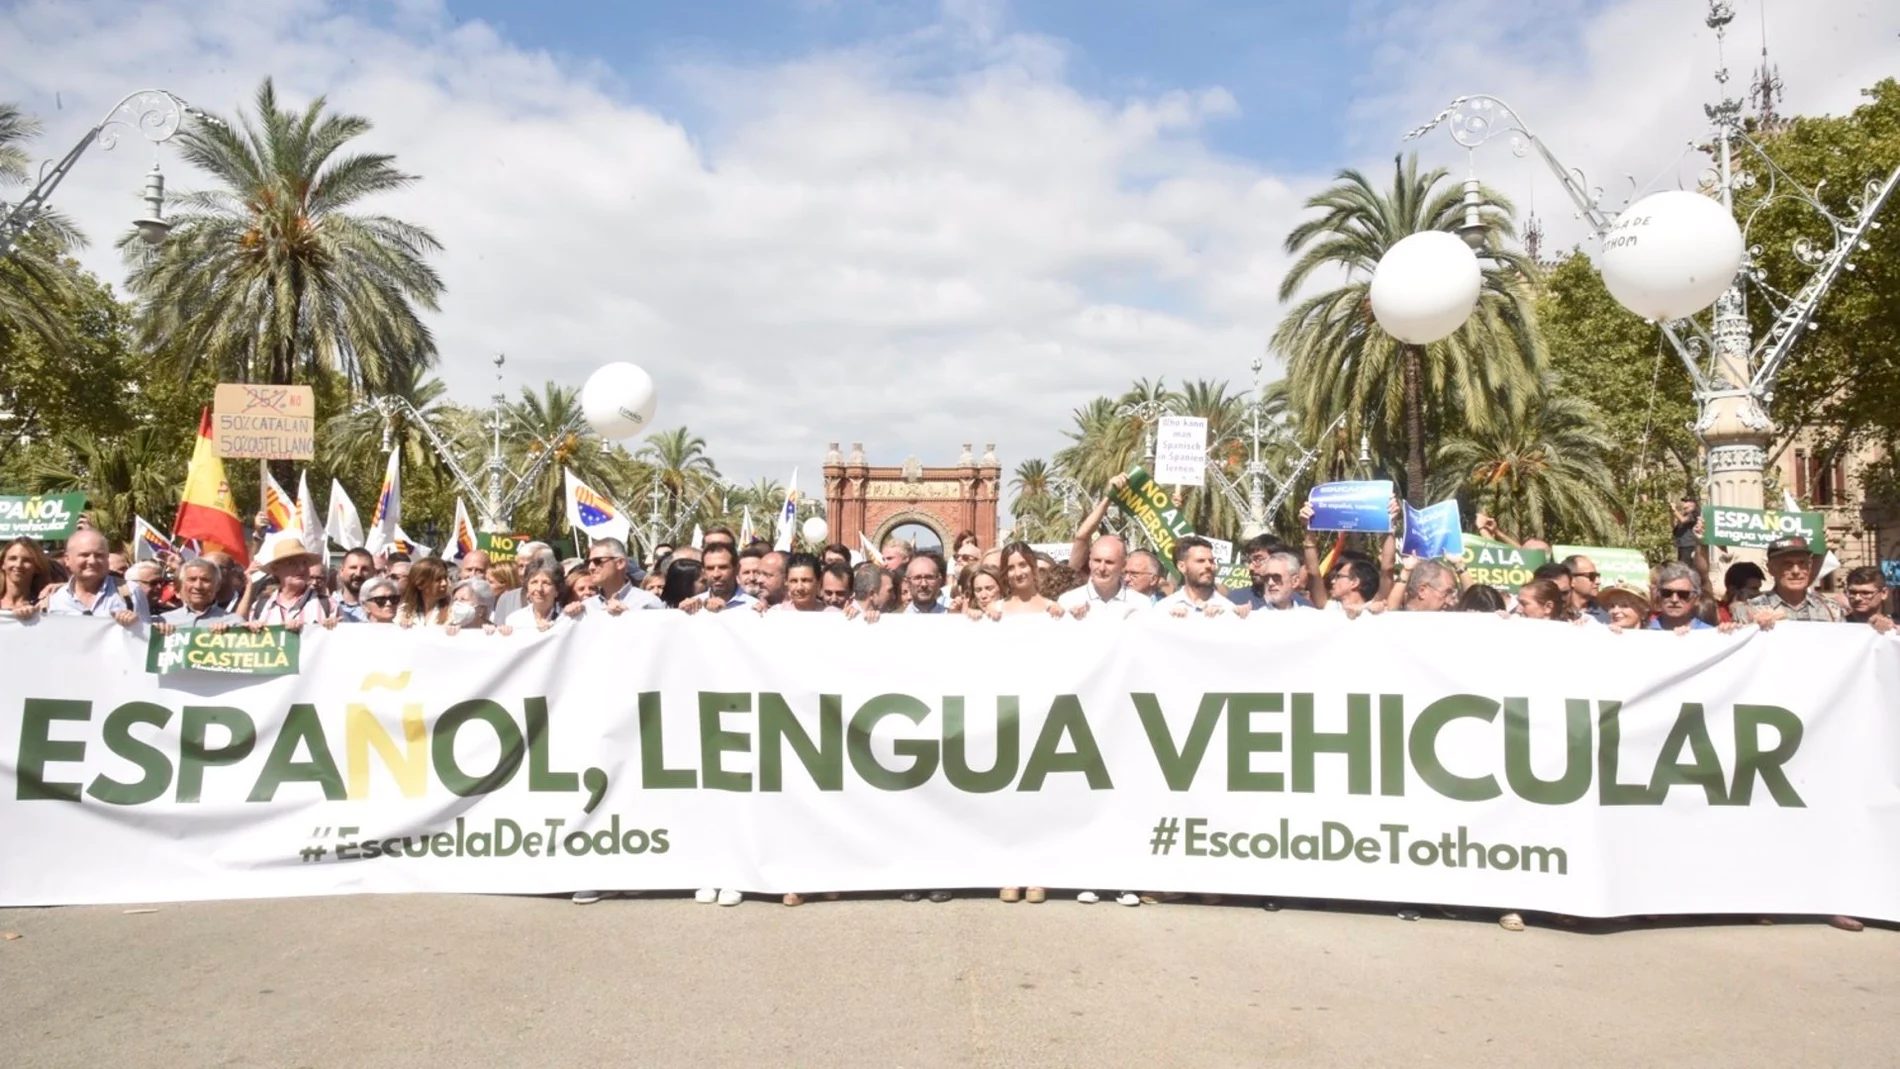 Inicio de la manifestación convocada por la organización Escuela de Todos a favor del 25% de castellano